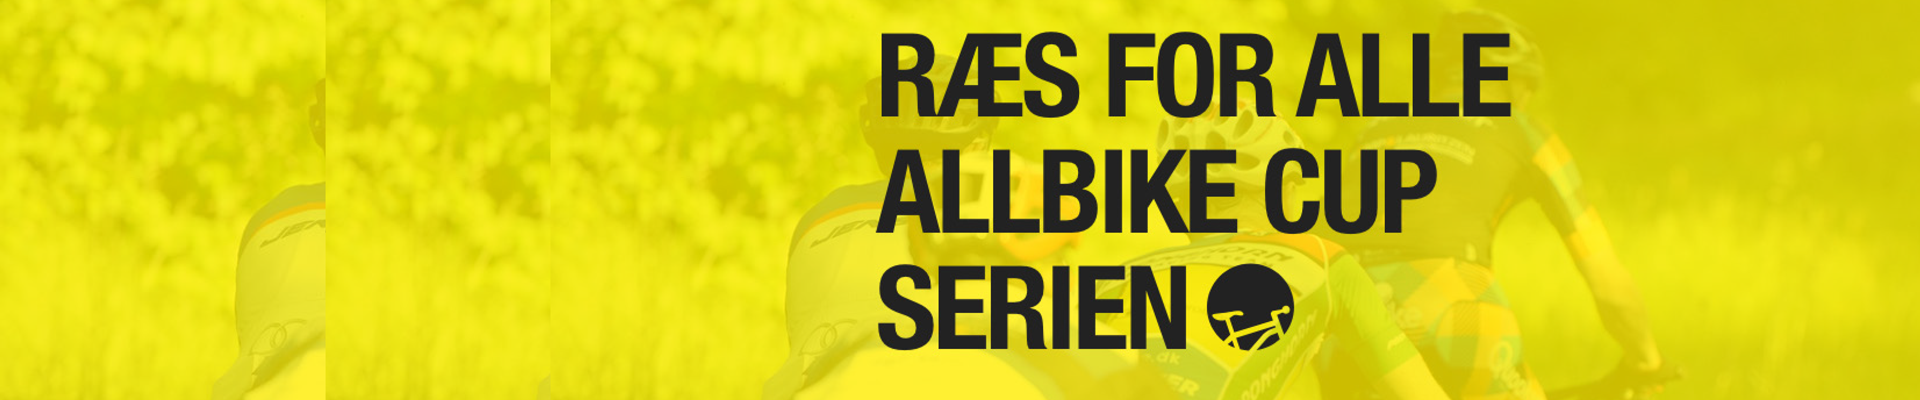 Allbike Cuppen 2019 - #8 Randers 89